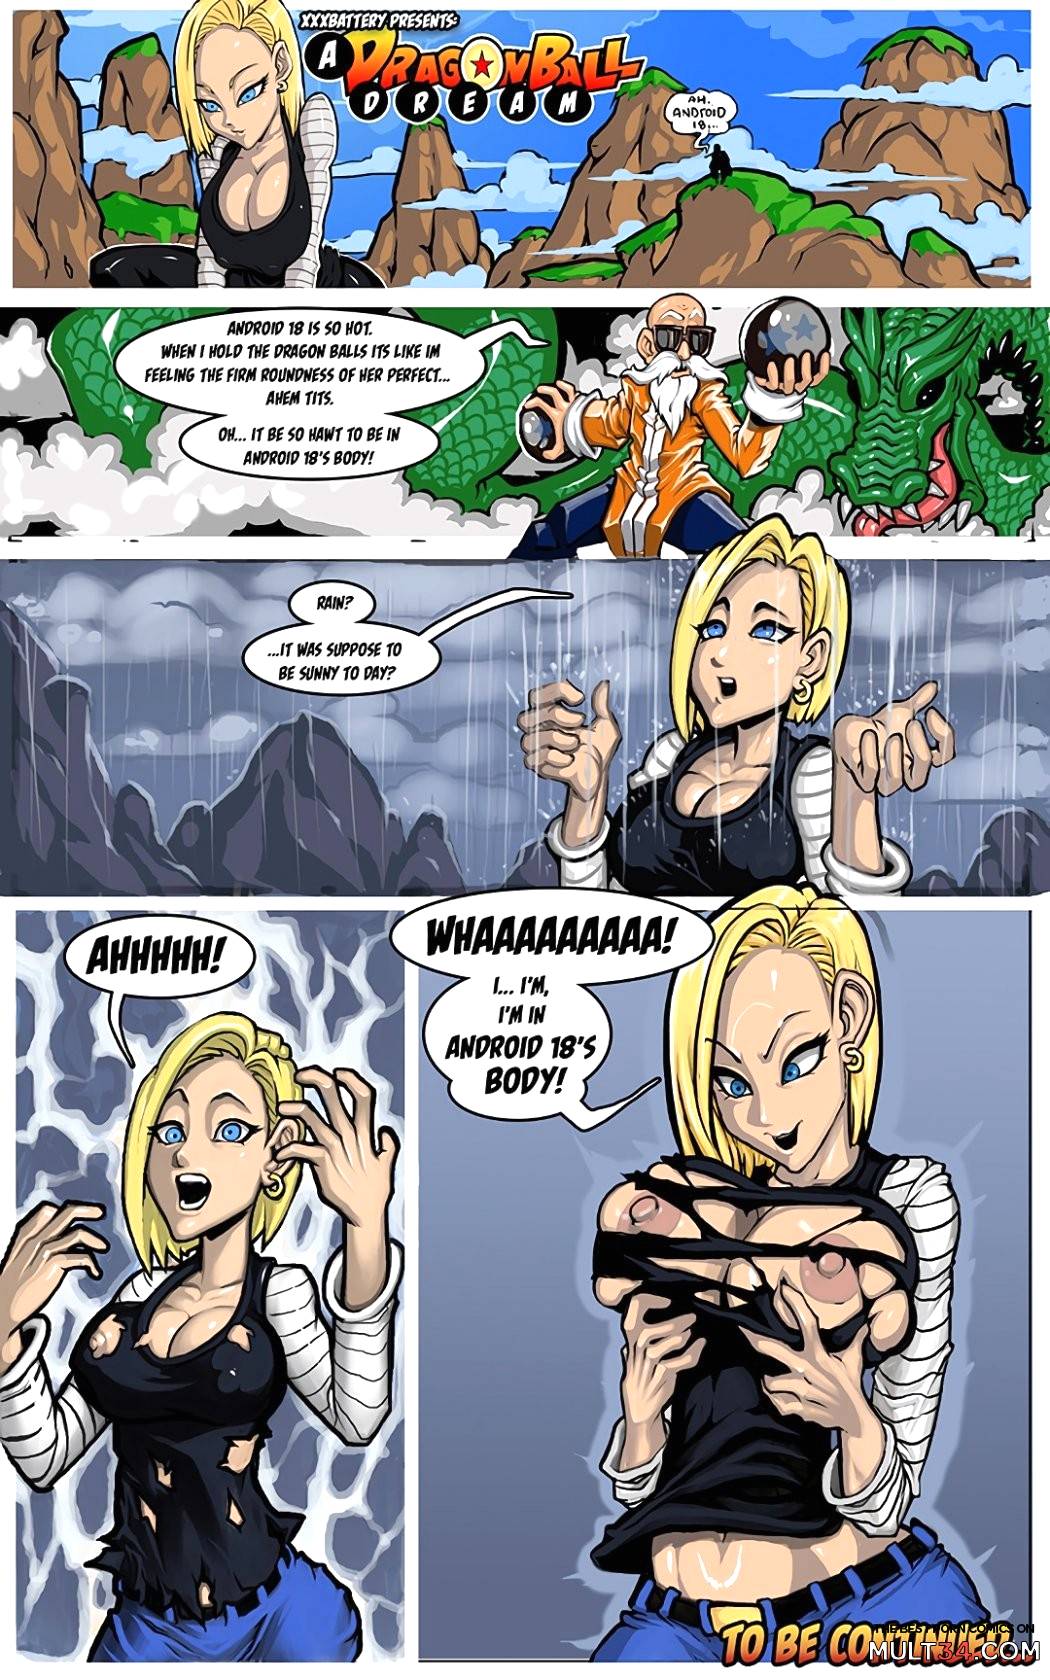 A dragon ball dream comic porn